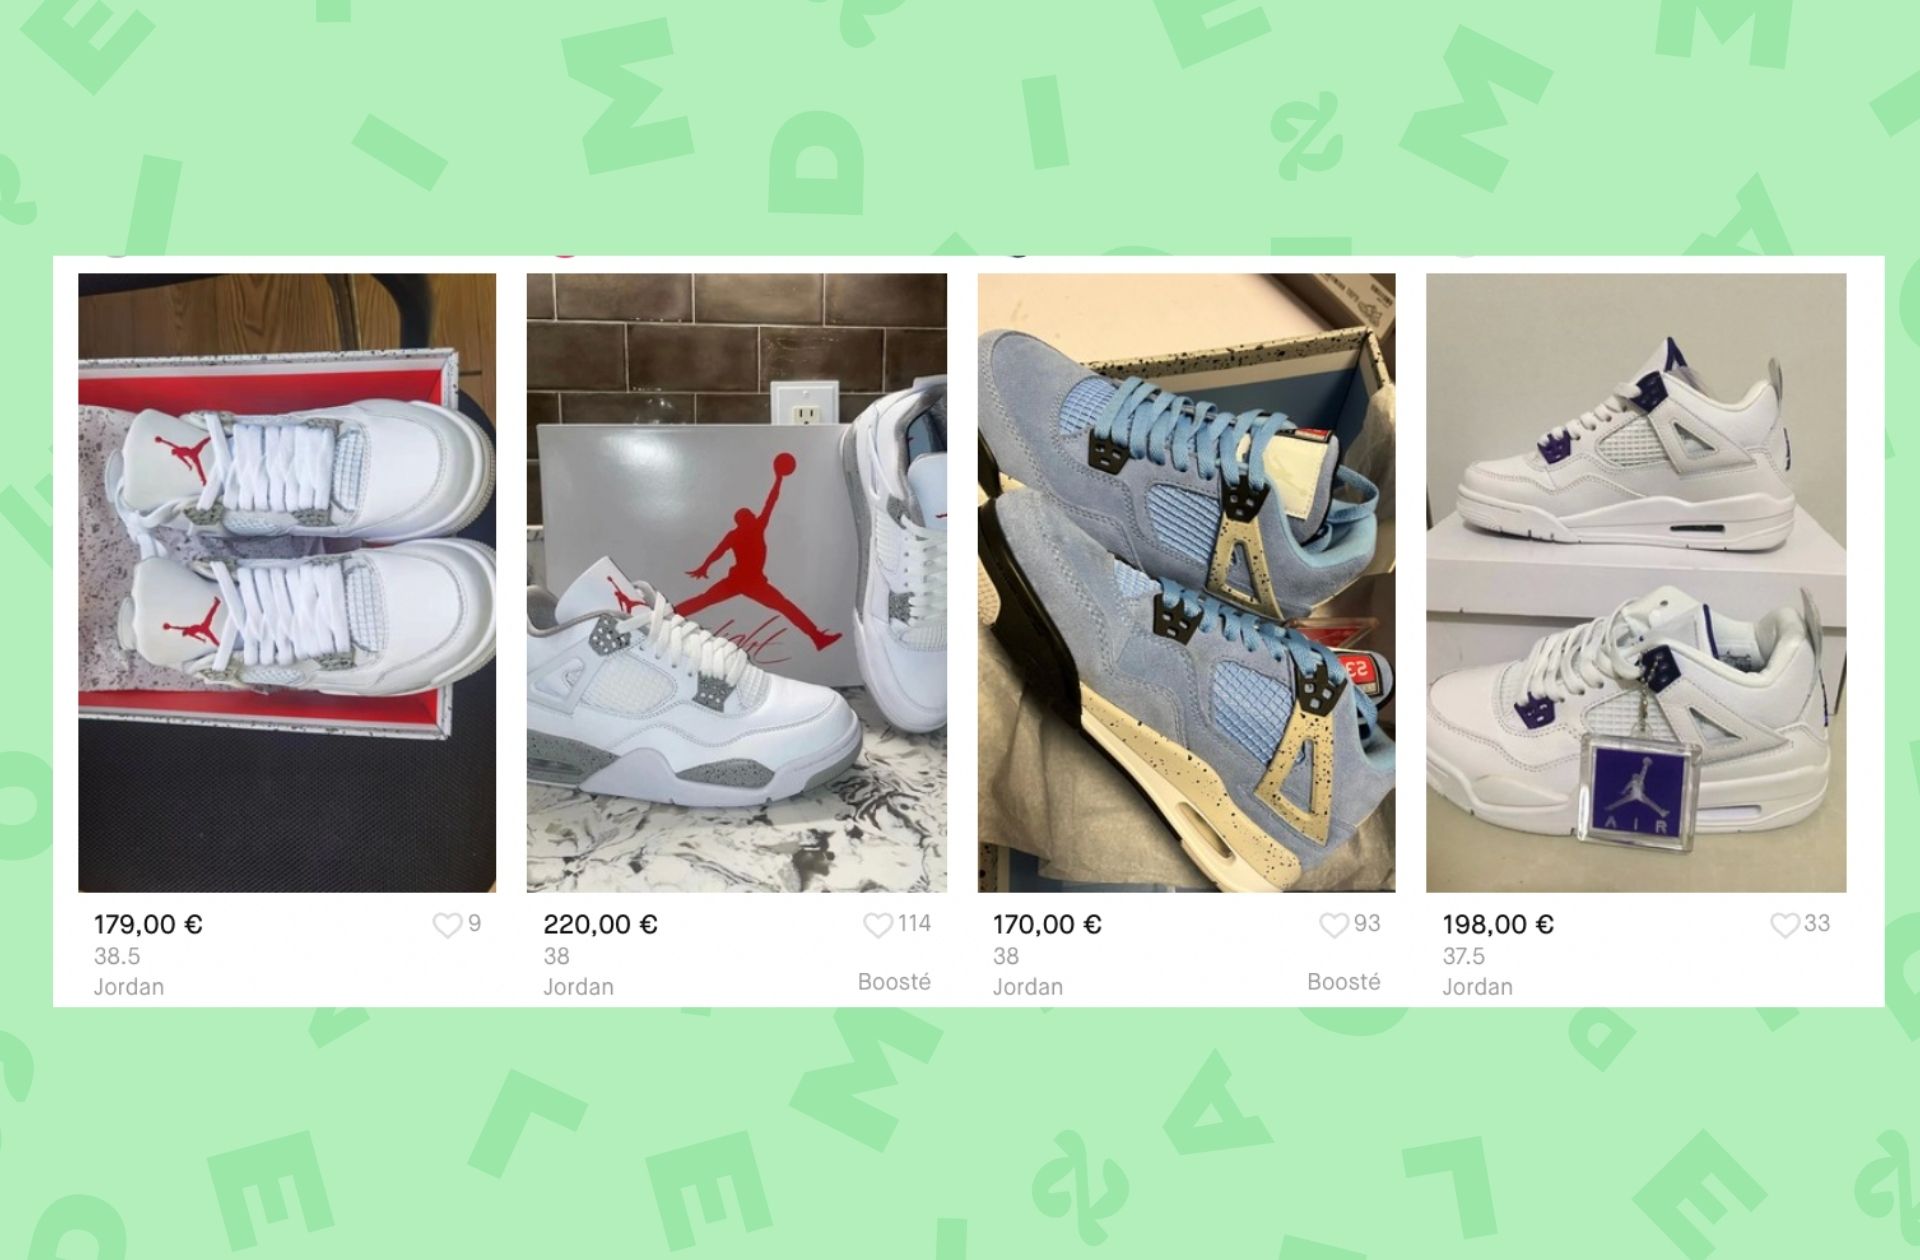 Exemple d'annonces de sneakers Jordan vendues sur Vinted. © Capture d'écran Vinted.